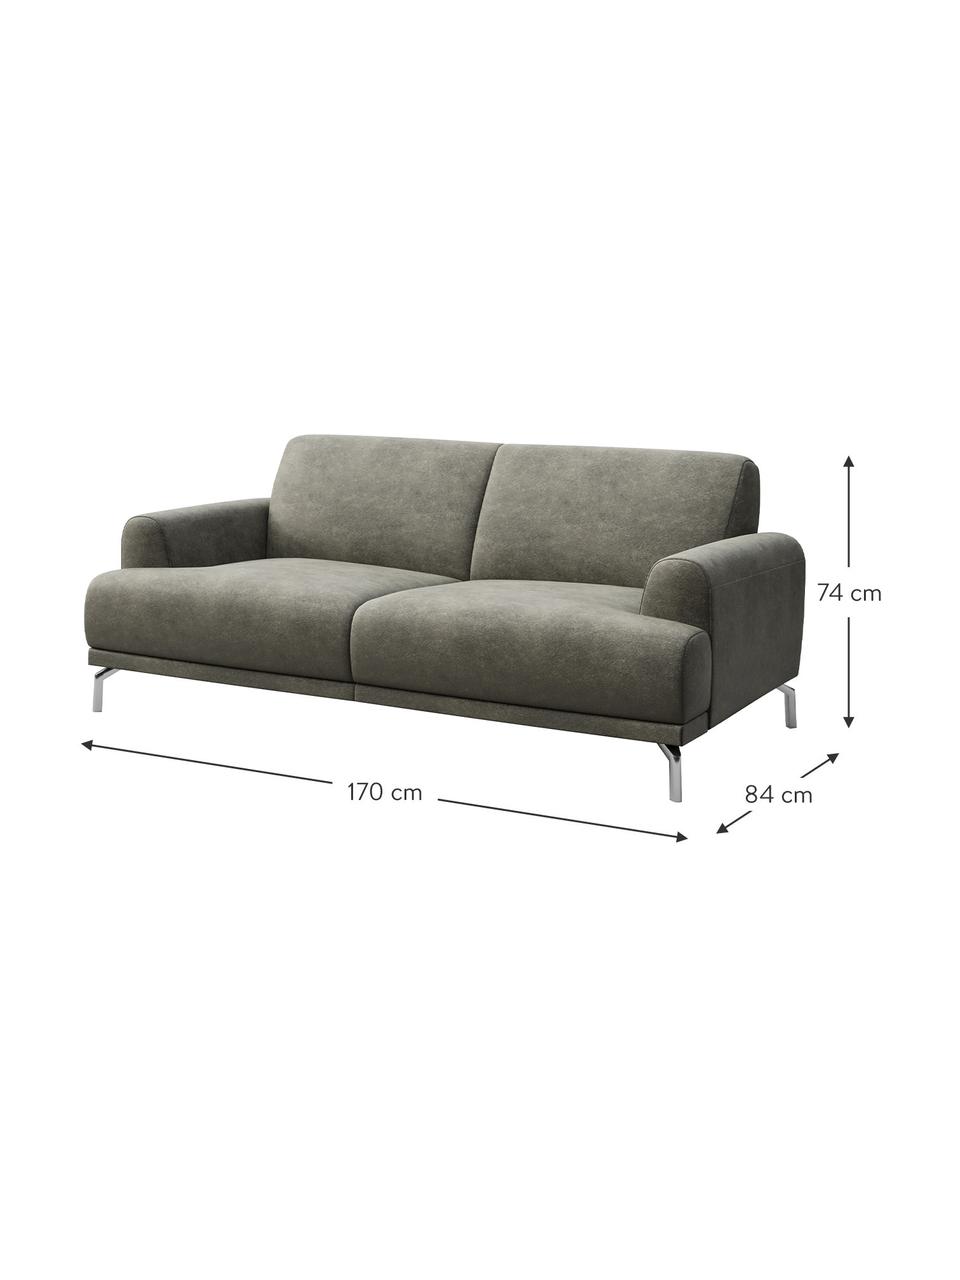 Sofa z imitacją skóry Puzo (2-osobowa), Tapicerka: 100% poliester imitujący , Nogi: metal lakierowany, Szary, S 170 x G 84 cm